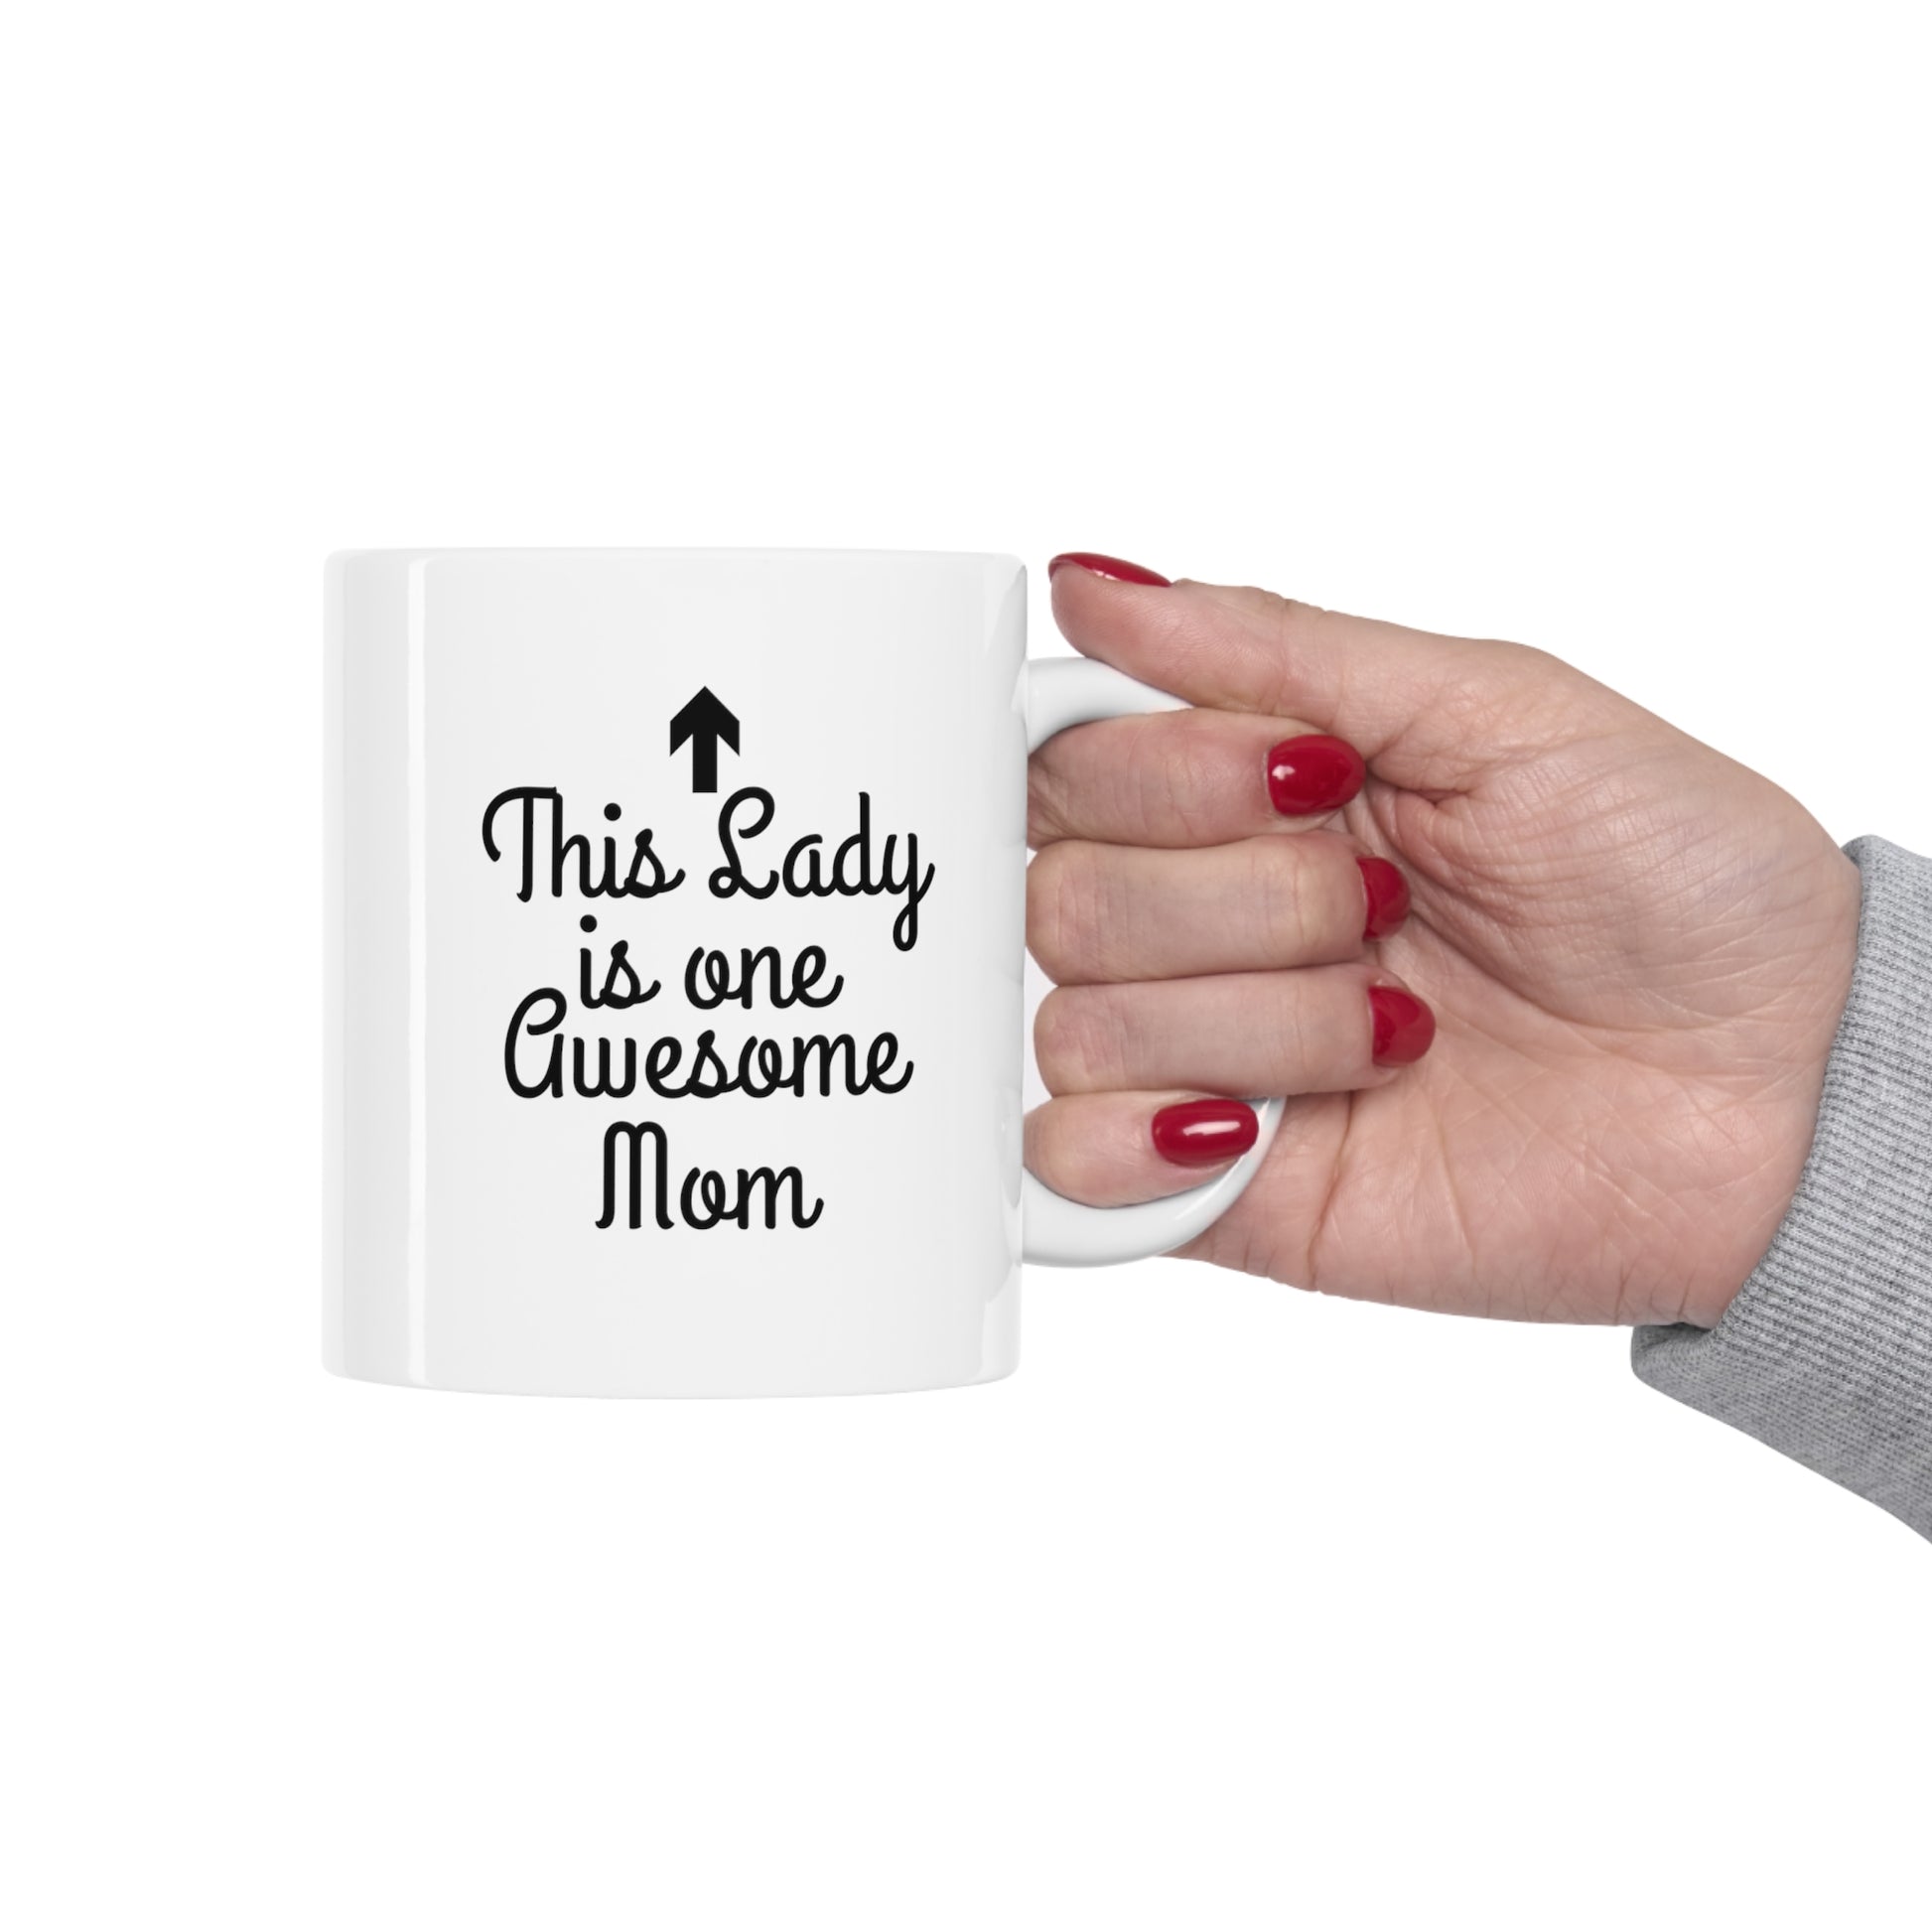 One Awesome Mom Funny Coffee Mug | Ceramic Mug 11oz